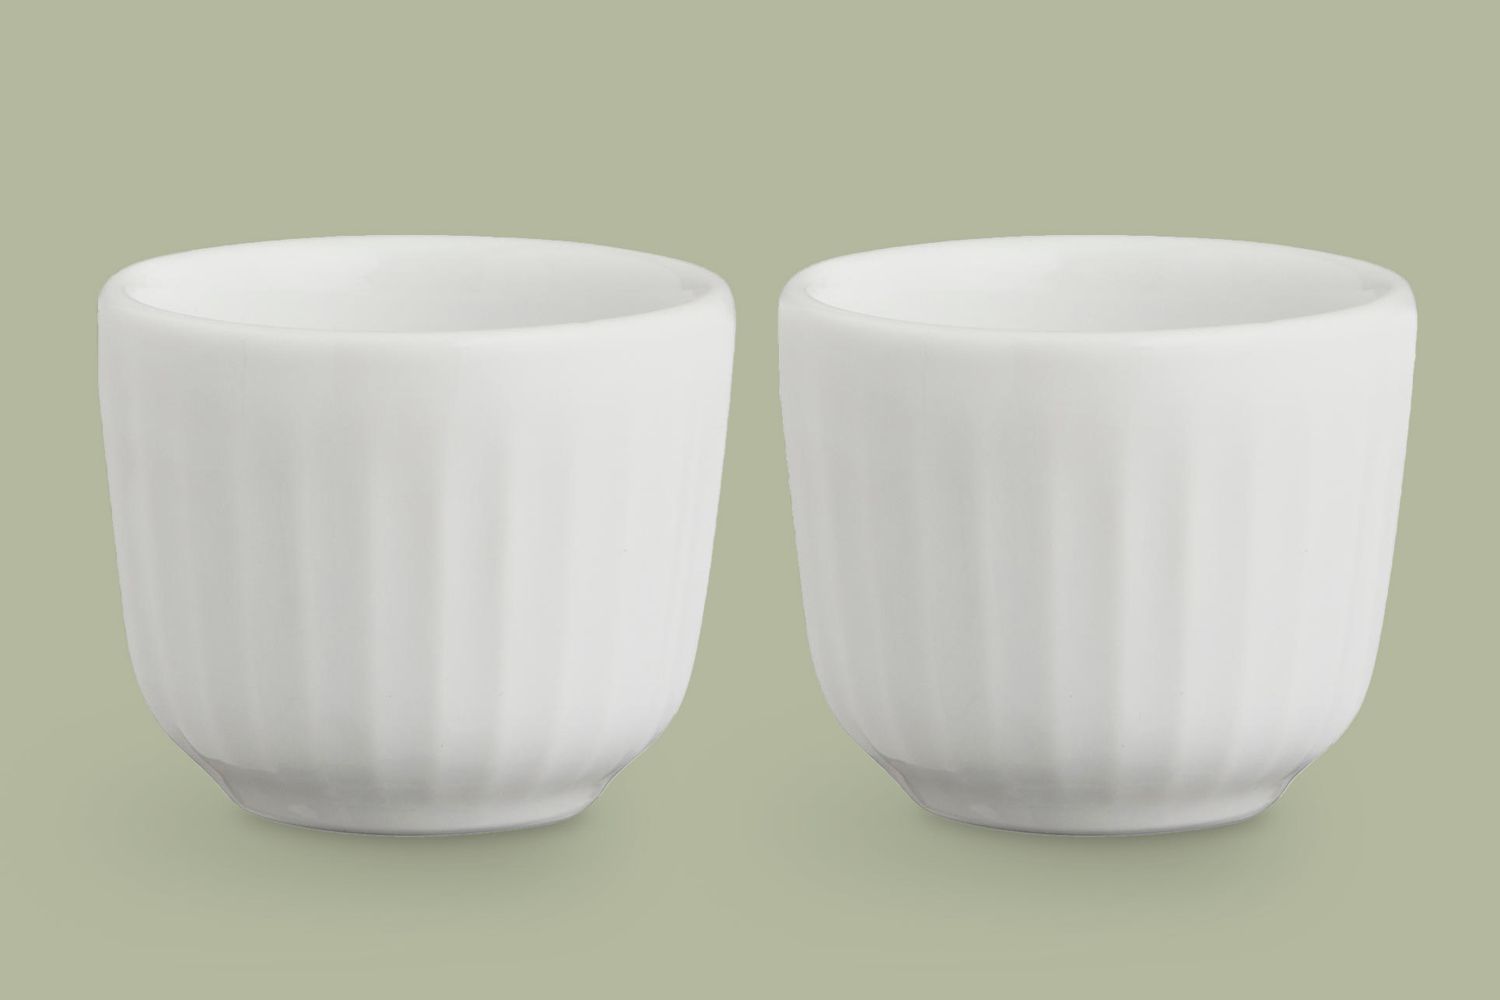 kahler-hammershoi-egg-cups